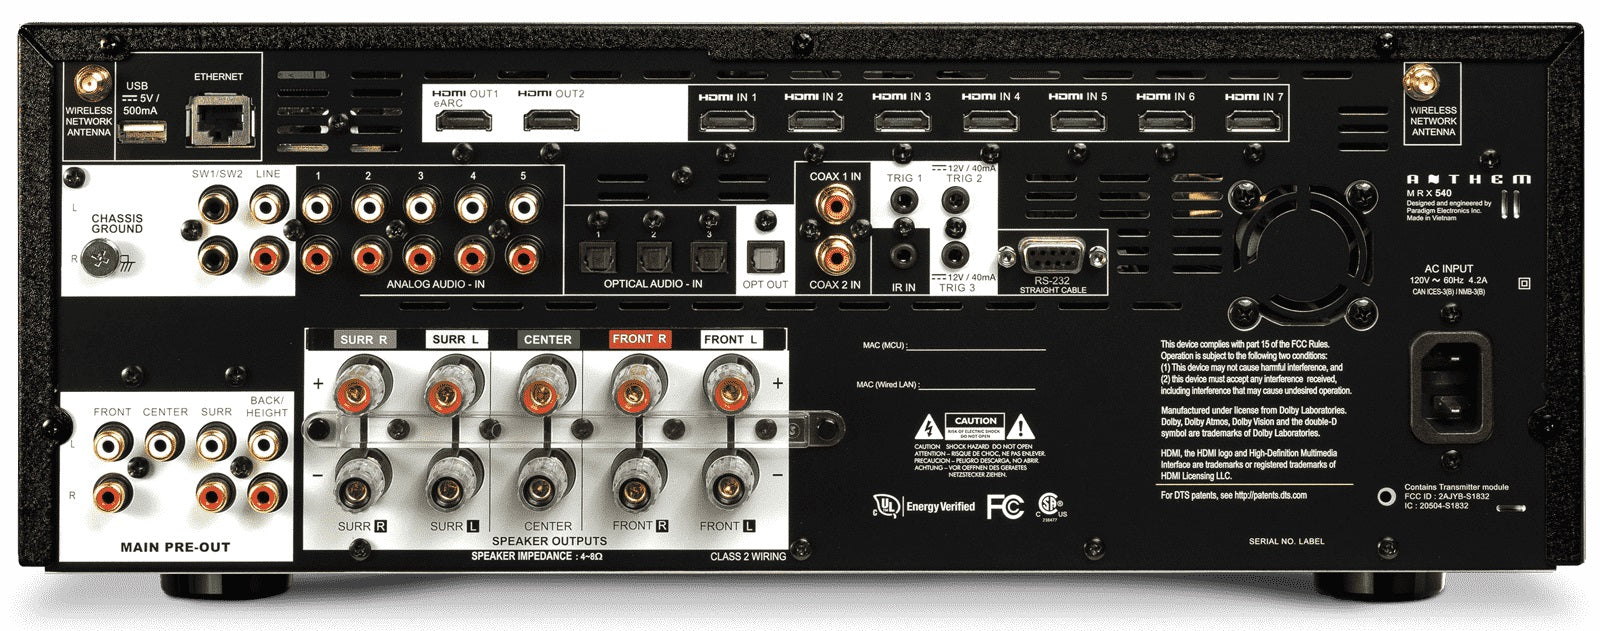 Anthem MRX 540 AV Receiver